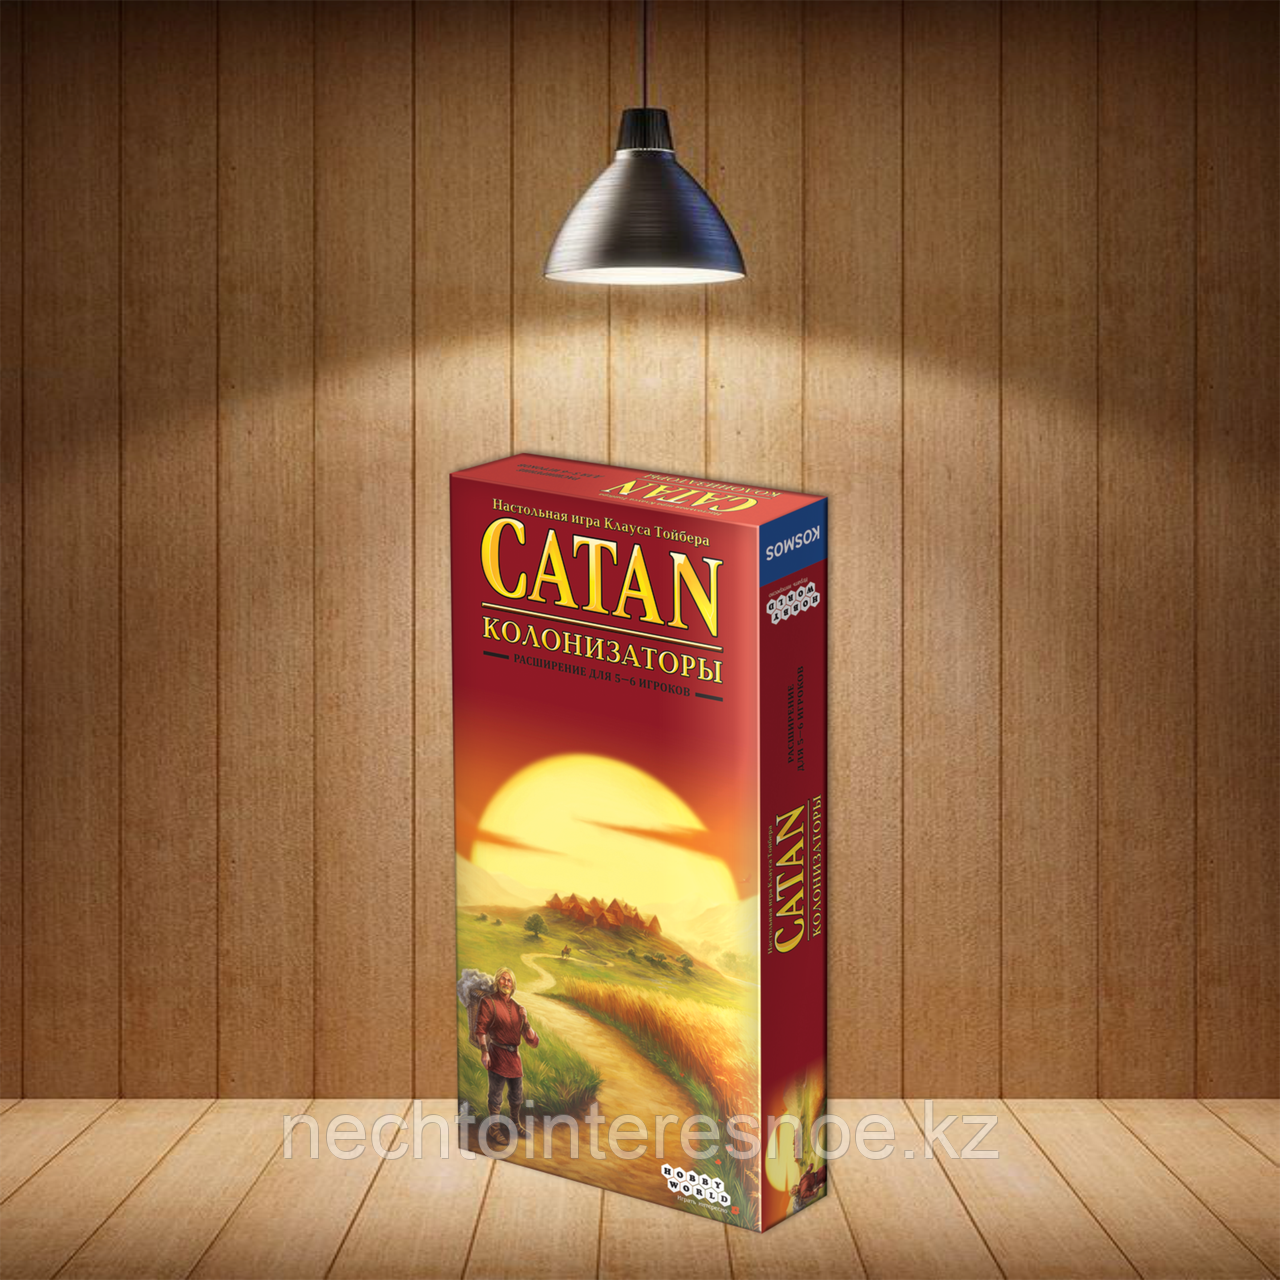 Настольная игра Catan: Колонизаторы. Расширение для 5-6 игроков